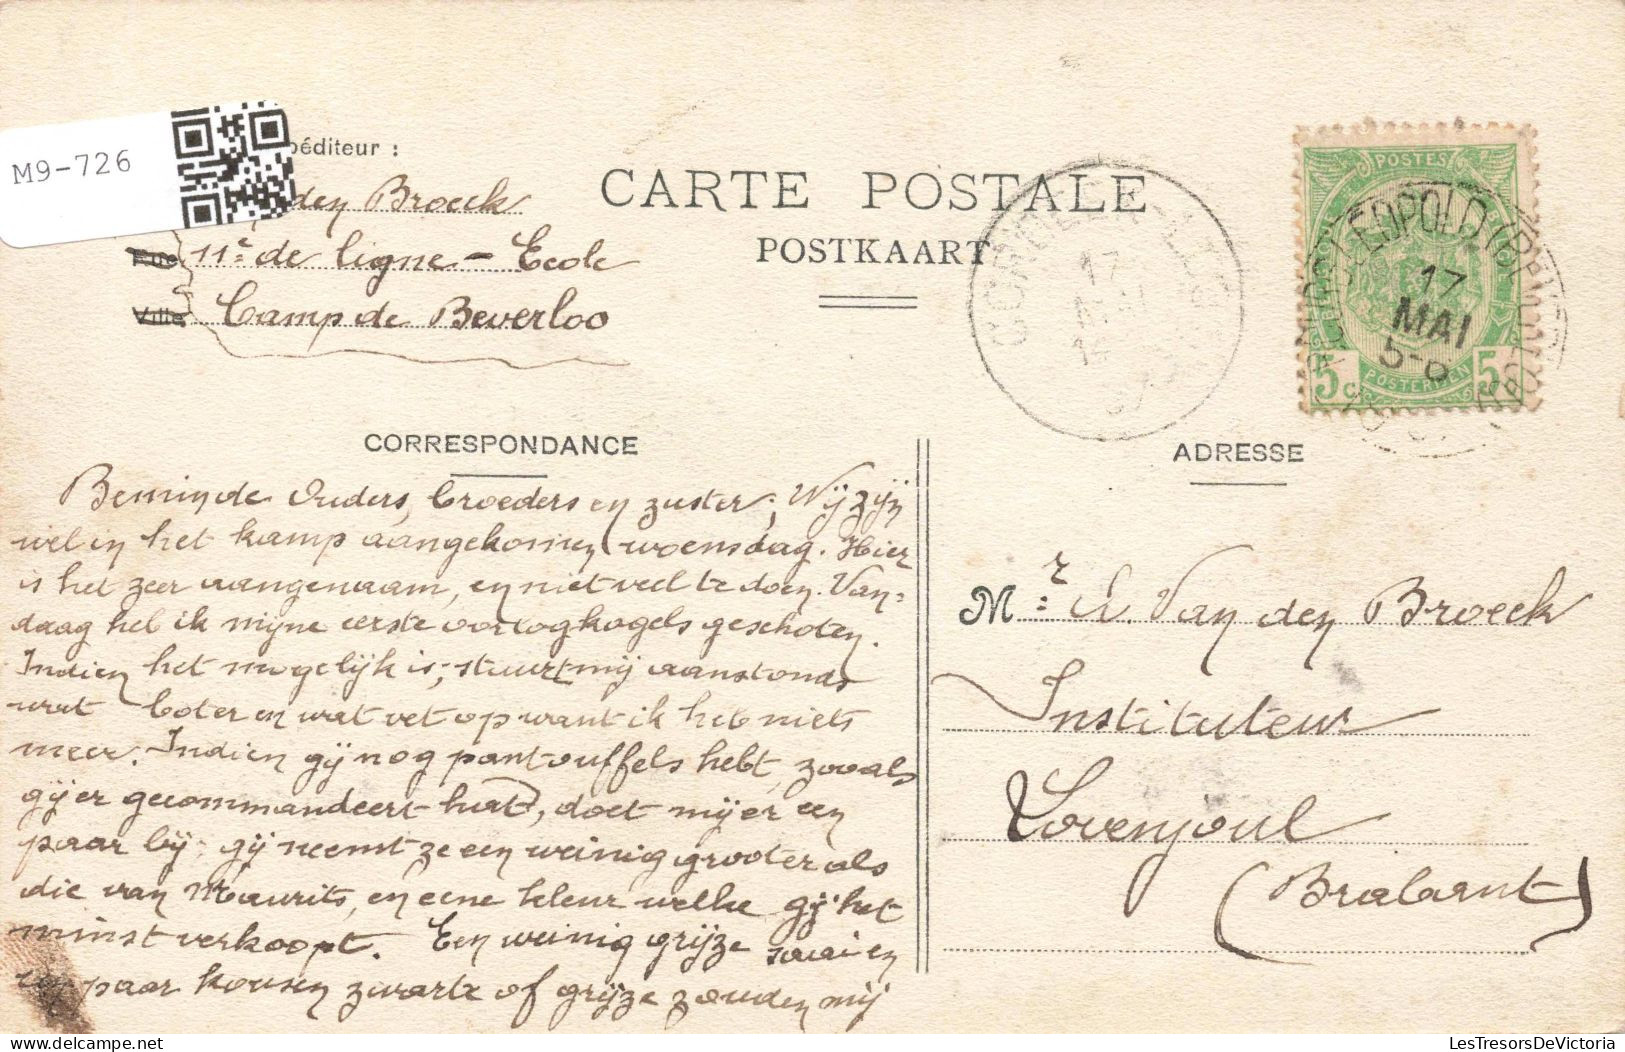 BELGIQUE- Hasselt - Bourg Leopold - Vue Sur La Gare - Carte Postale Ancienne - Hasselt